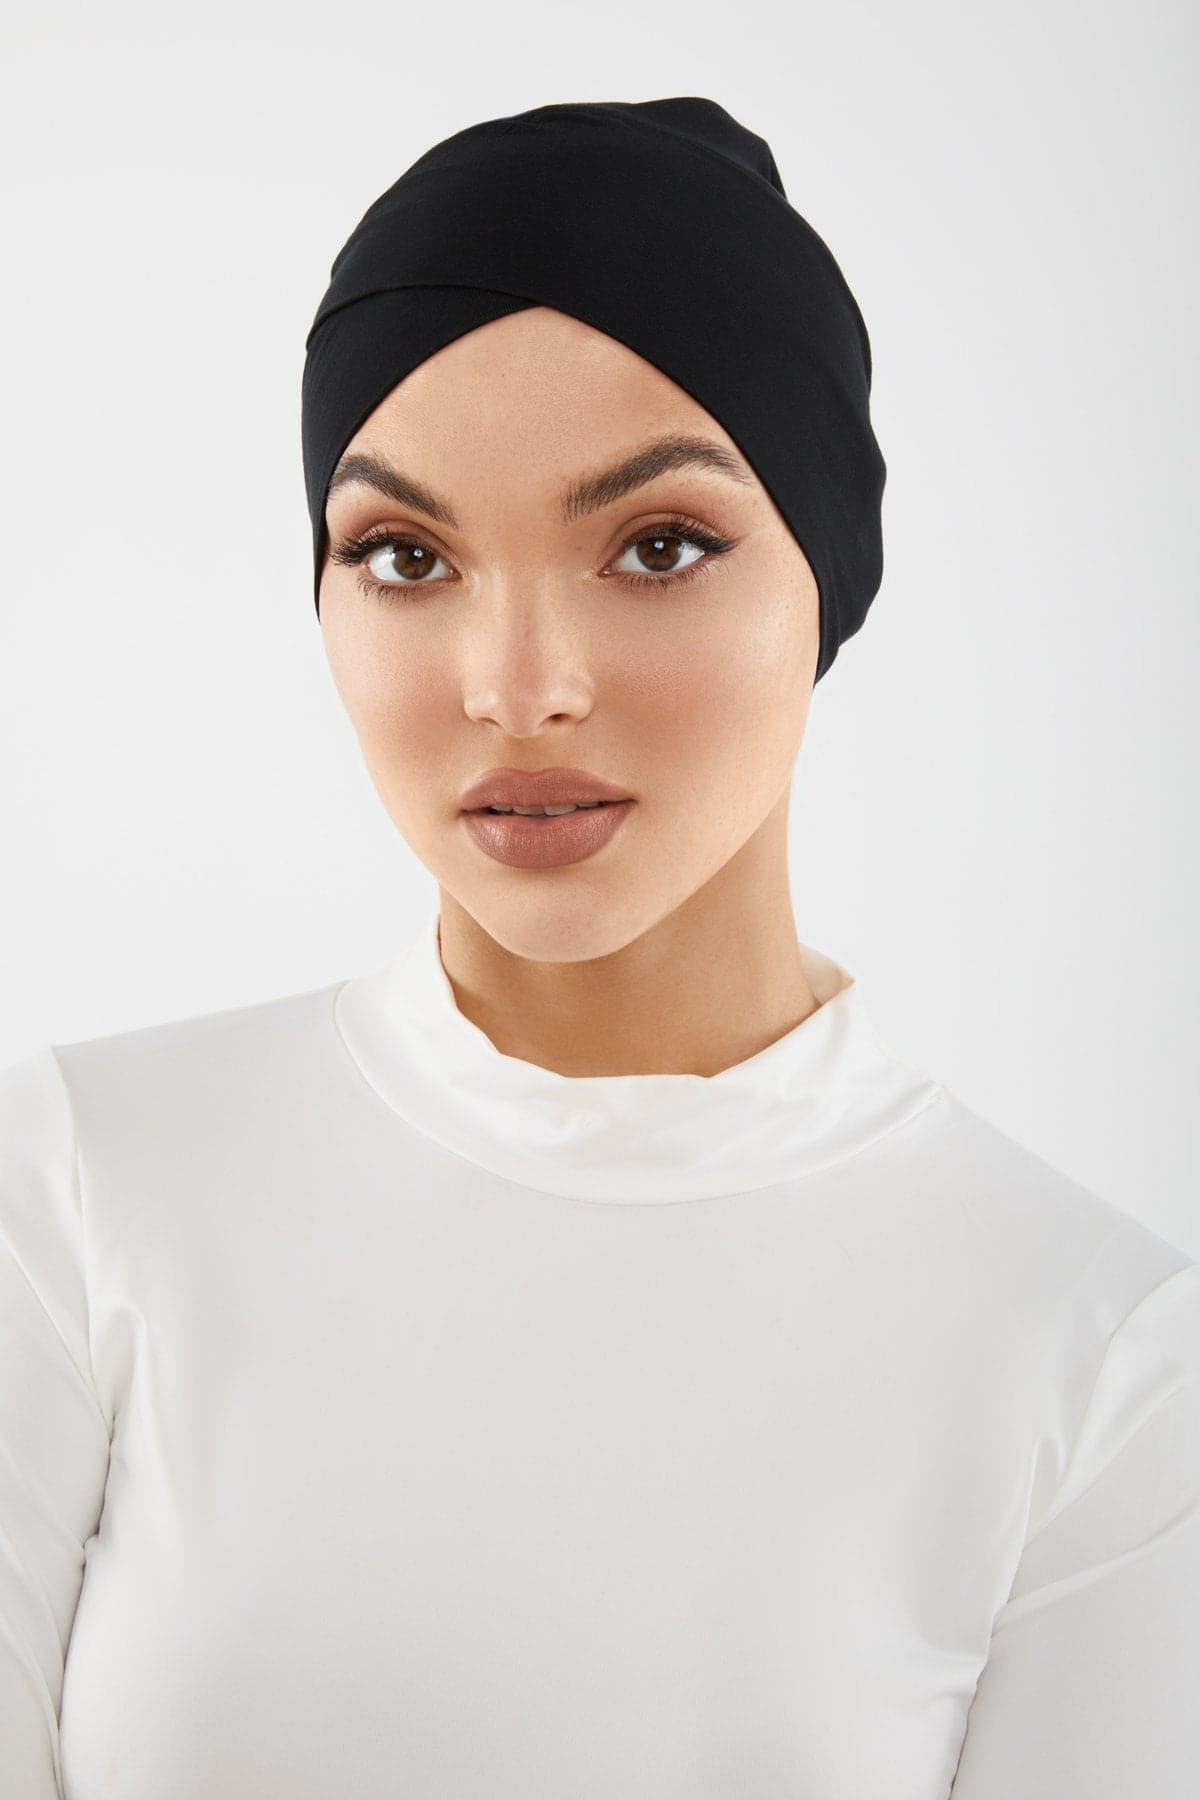 Black Undercap hijab cap